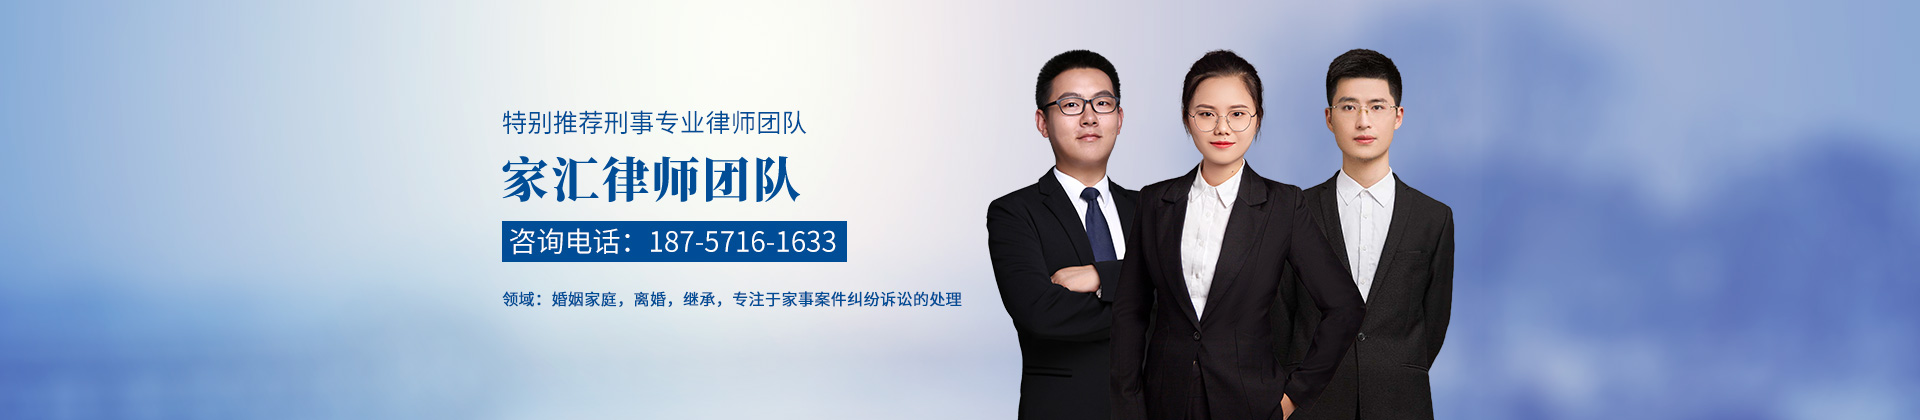 浙江杭州律师-家汇律师团队律师